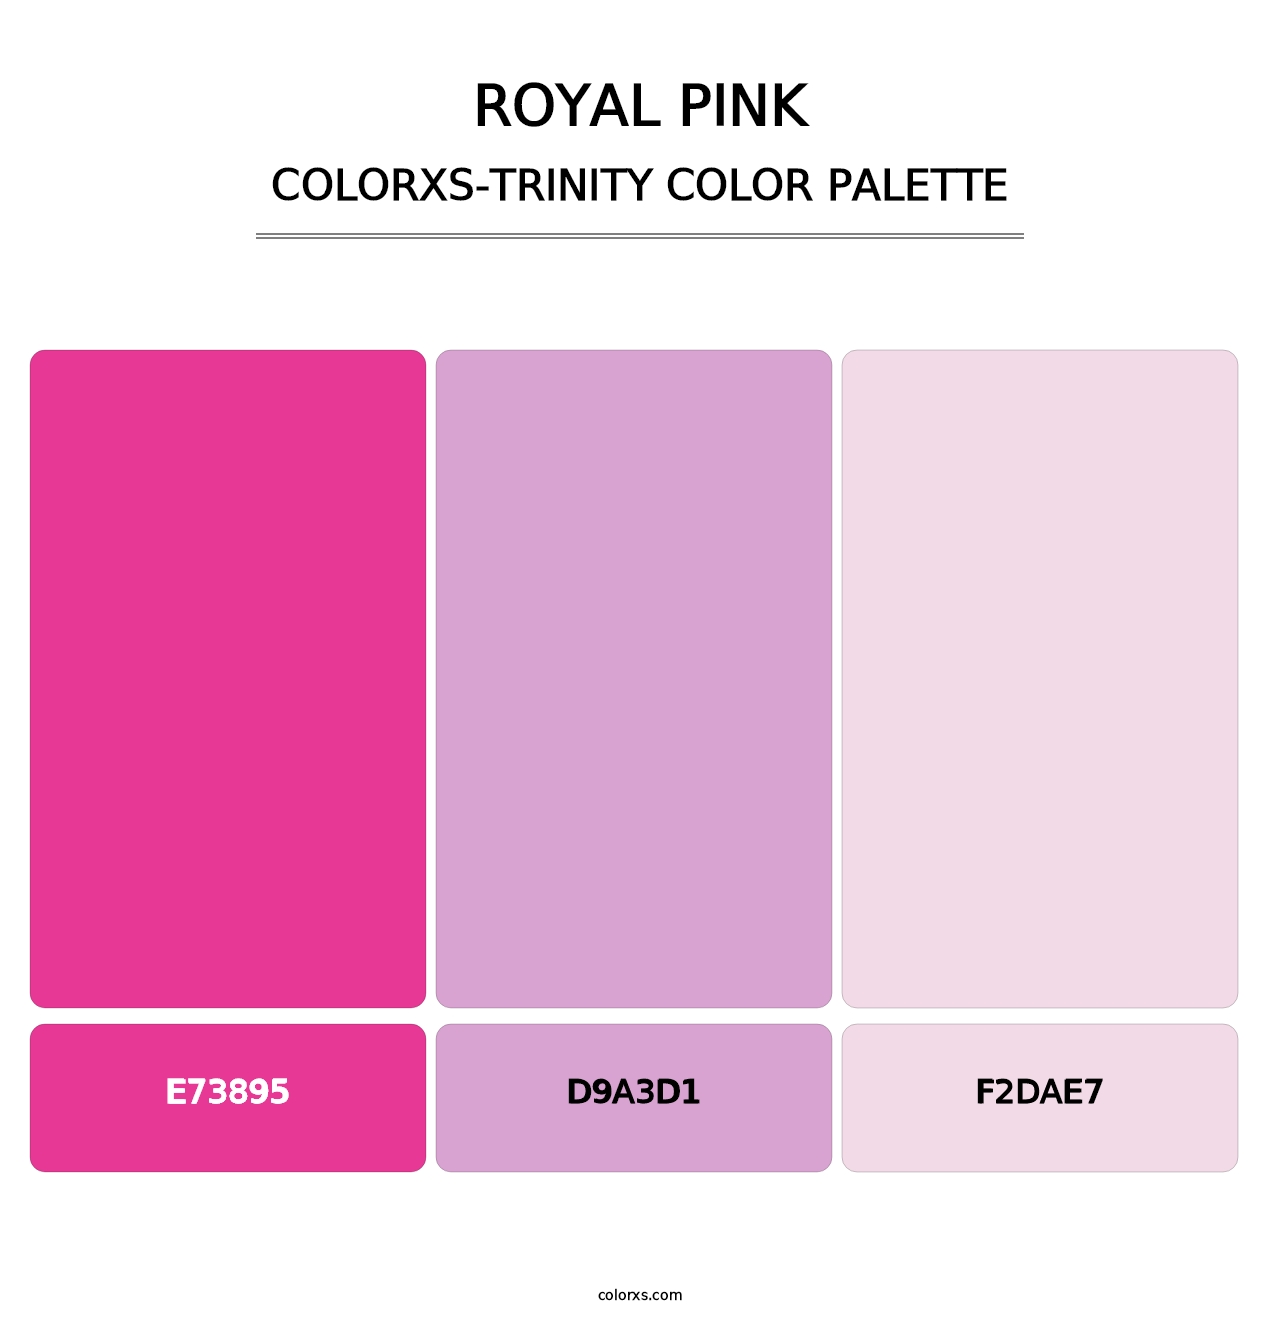 Royal Pink - Colorxs Trinity Palette